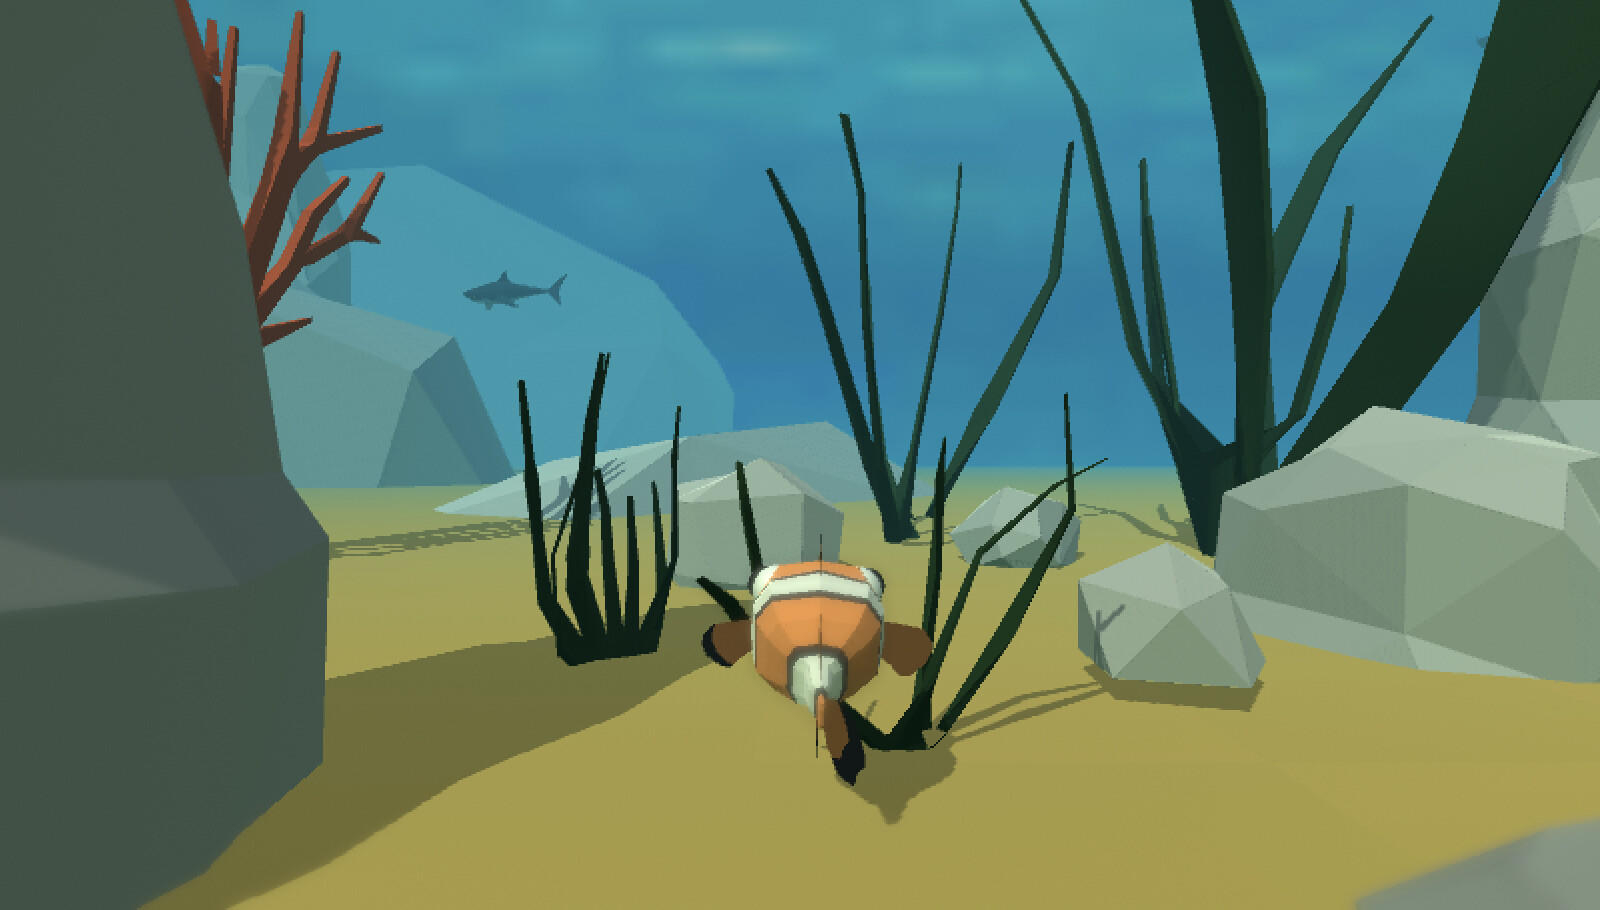 Screenshot 1 of Fish Survivor - Alimente, cresça e evolua! 